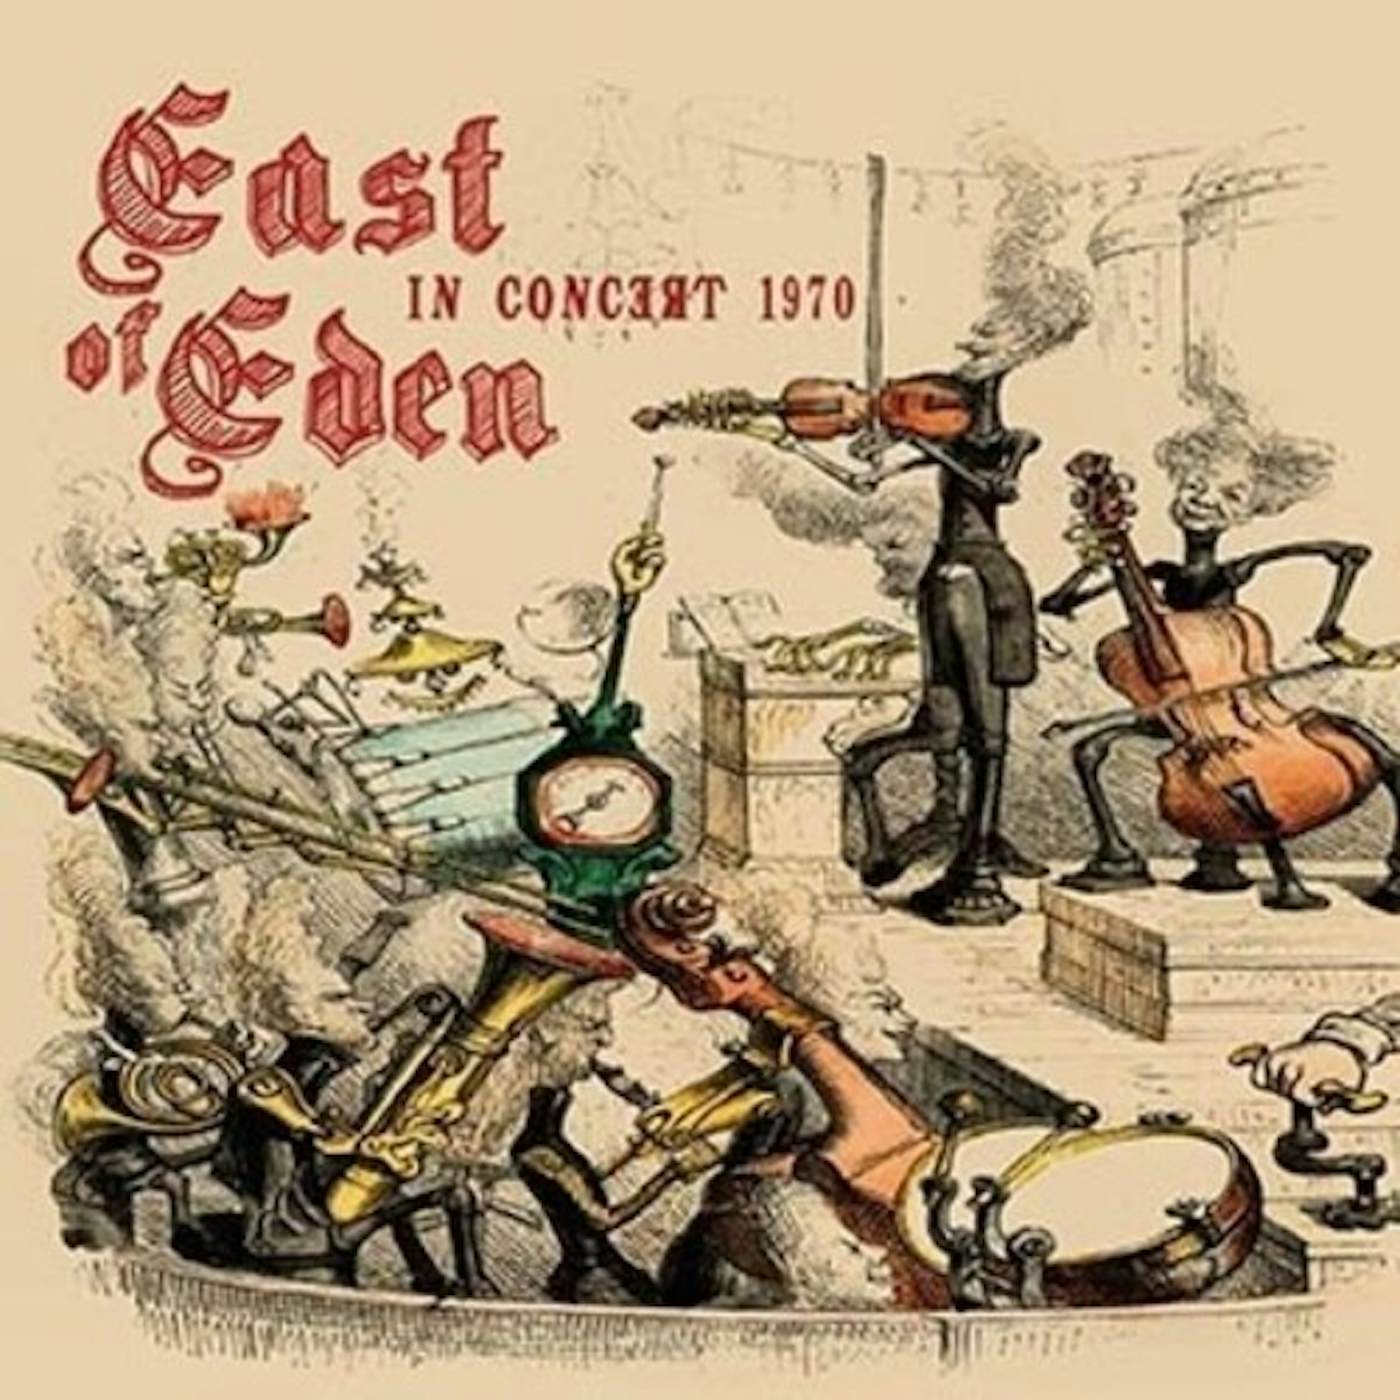 East Of Eden IN CONCERT 1970 CD